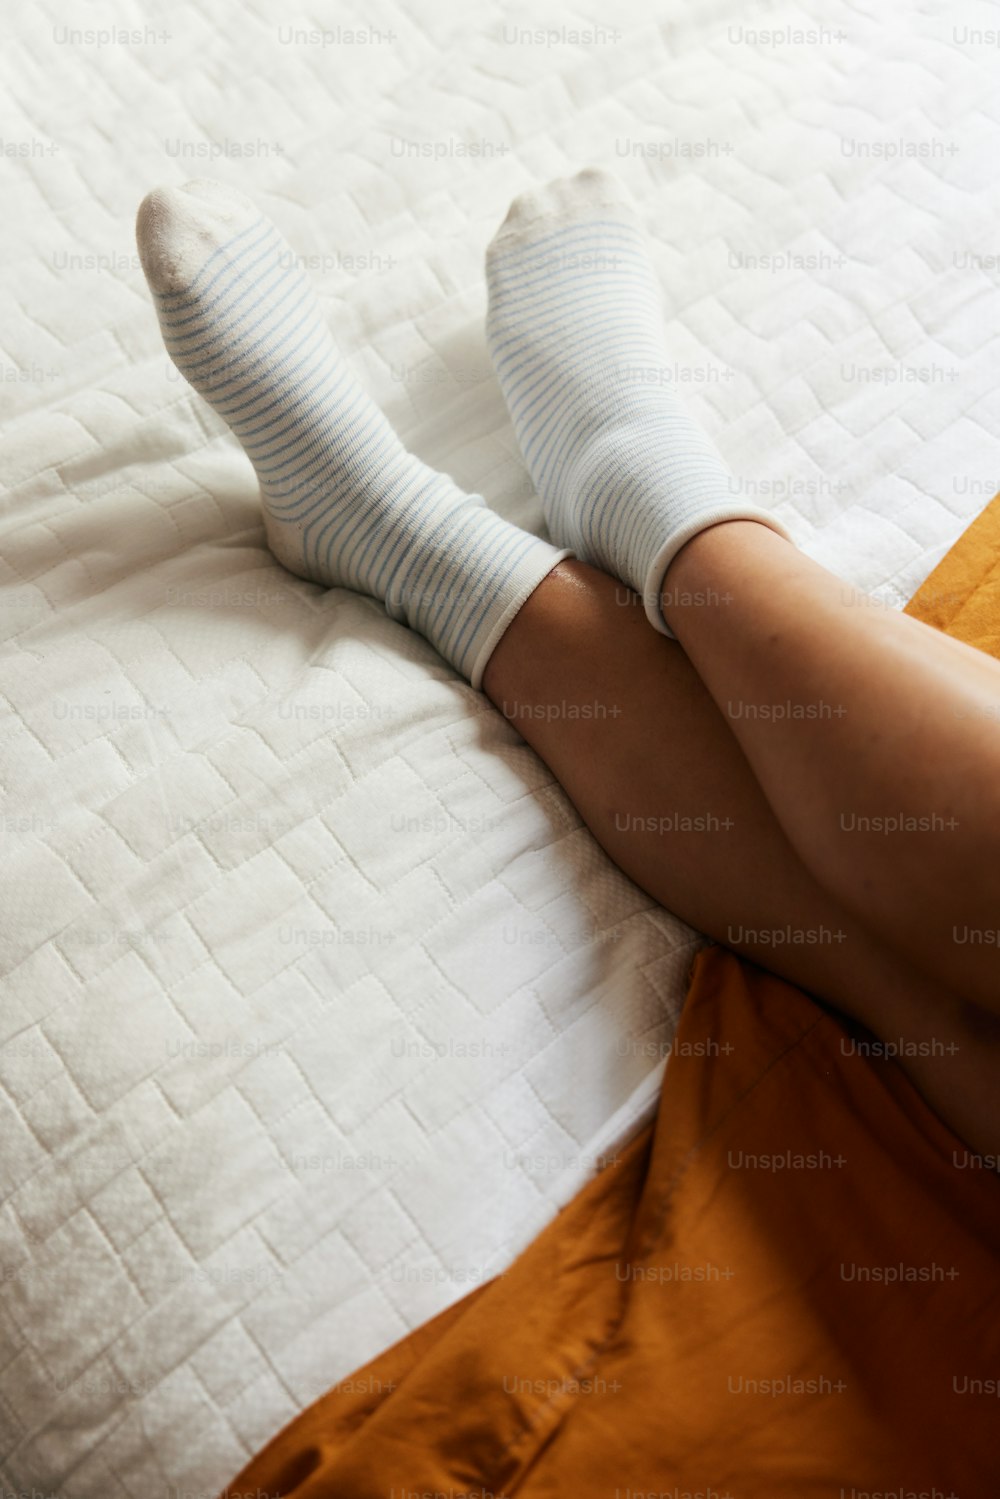 Una persona acostada en una cama con calcetines blancos